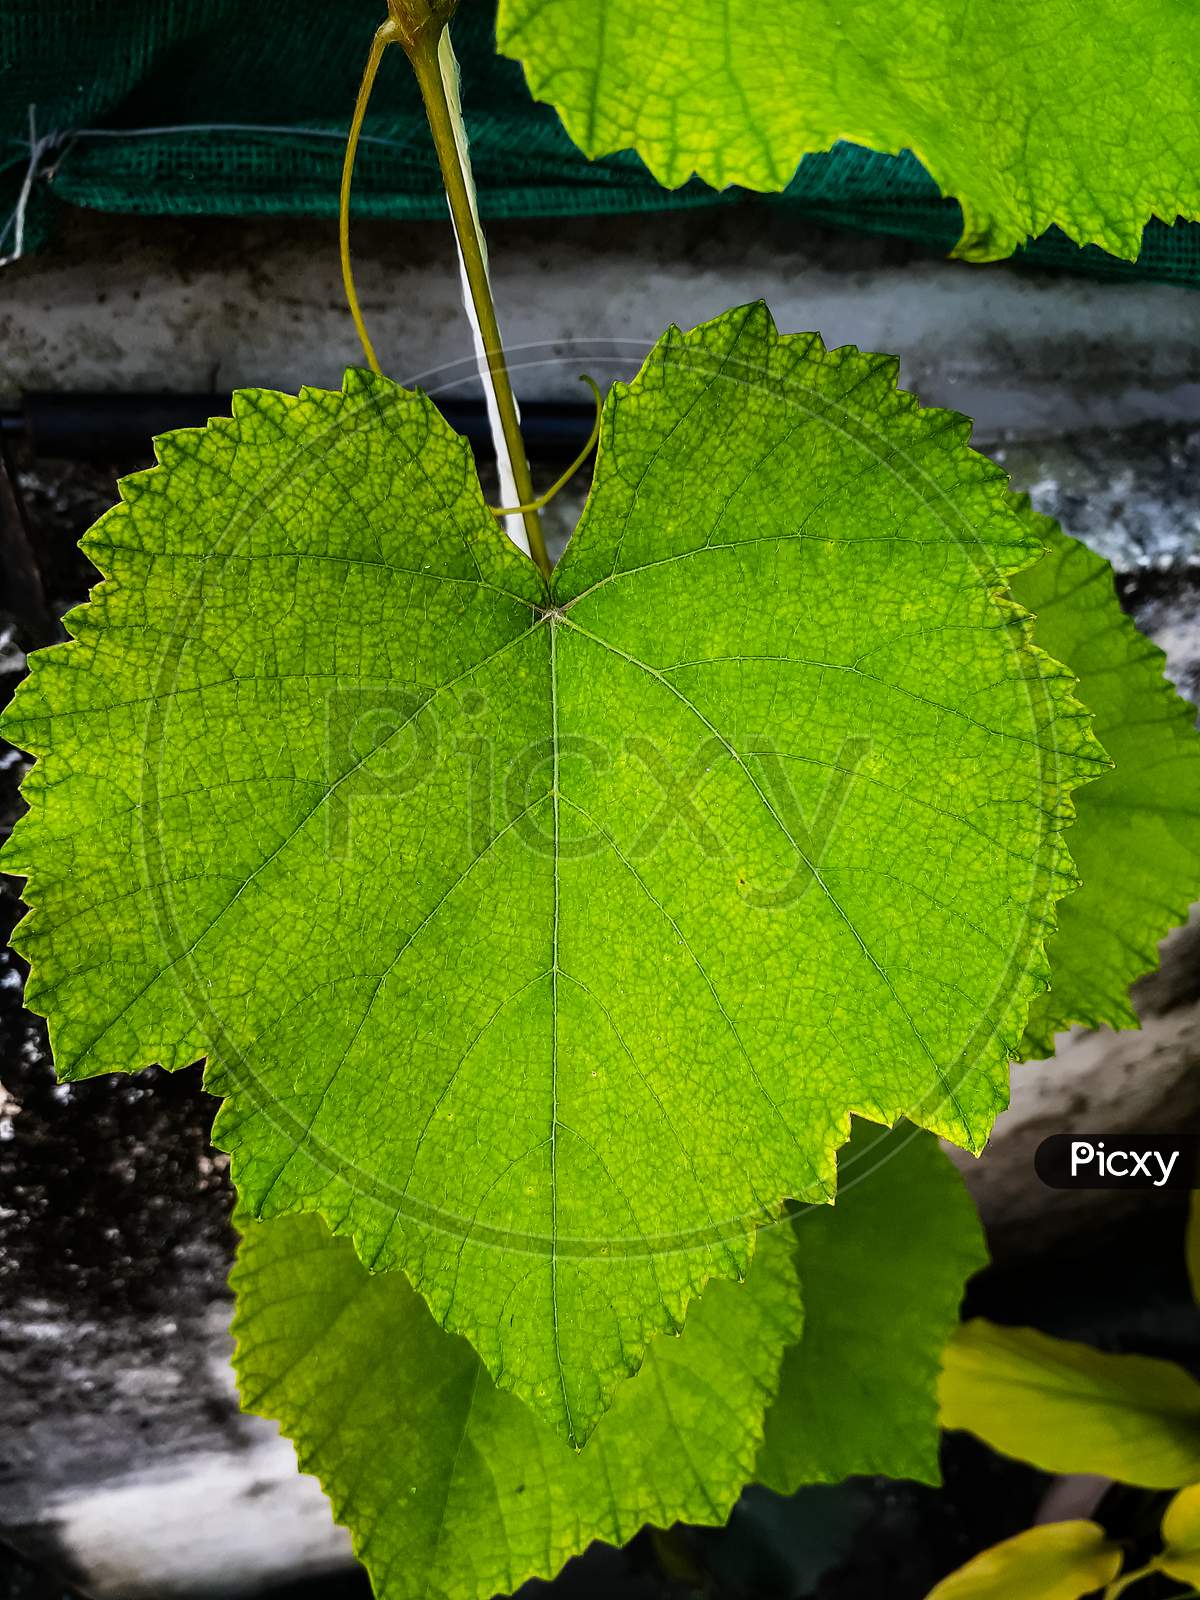 Grapevine- picture of grape leaf